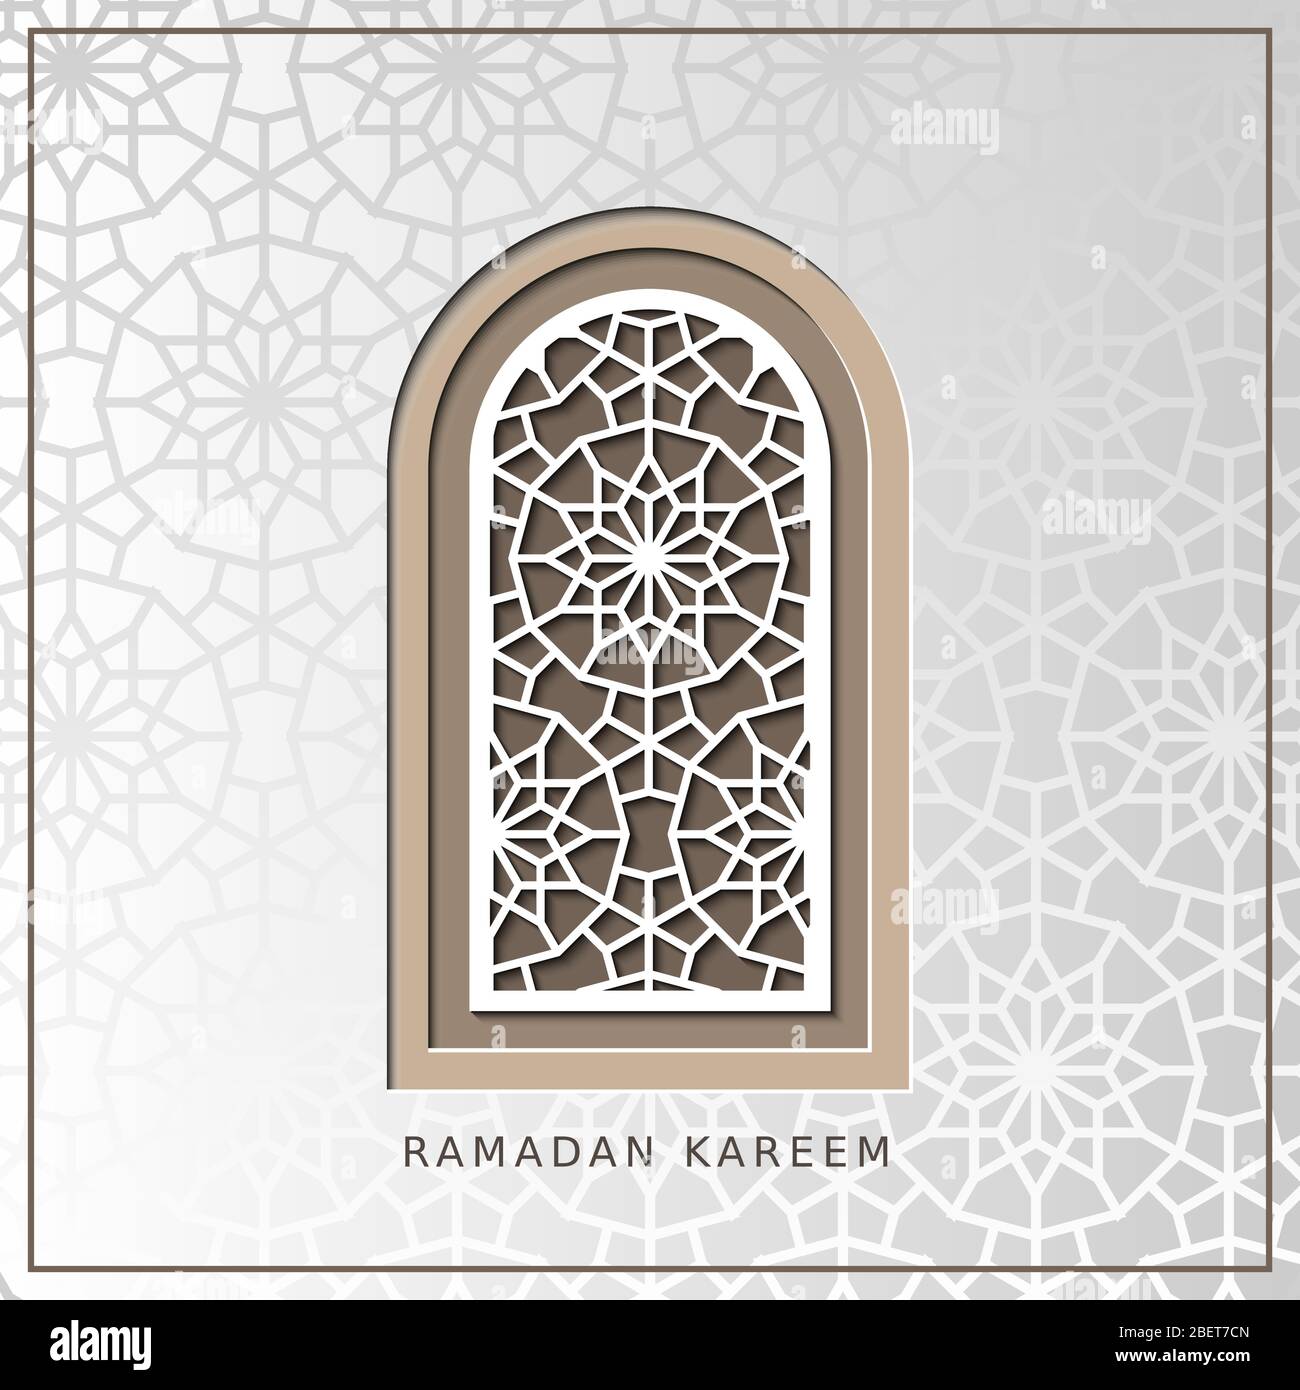 Ramadan kareem carta vettoriale con finestra arabica. Tagliare Illustrazione Vettoriale